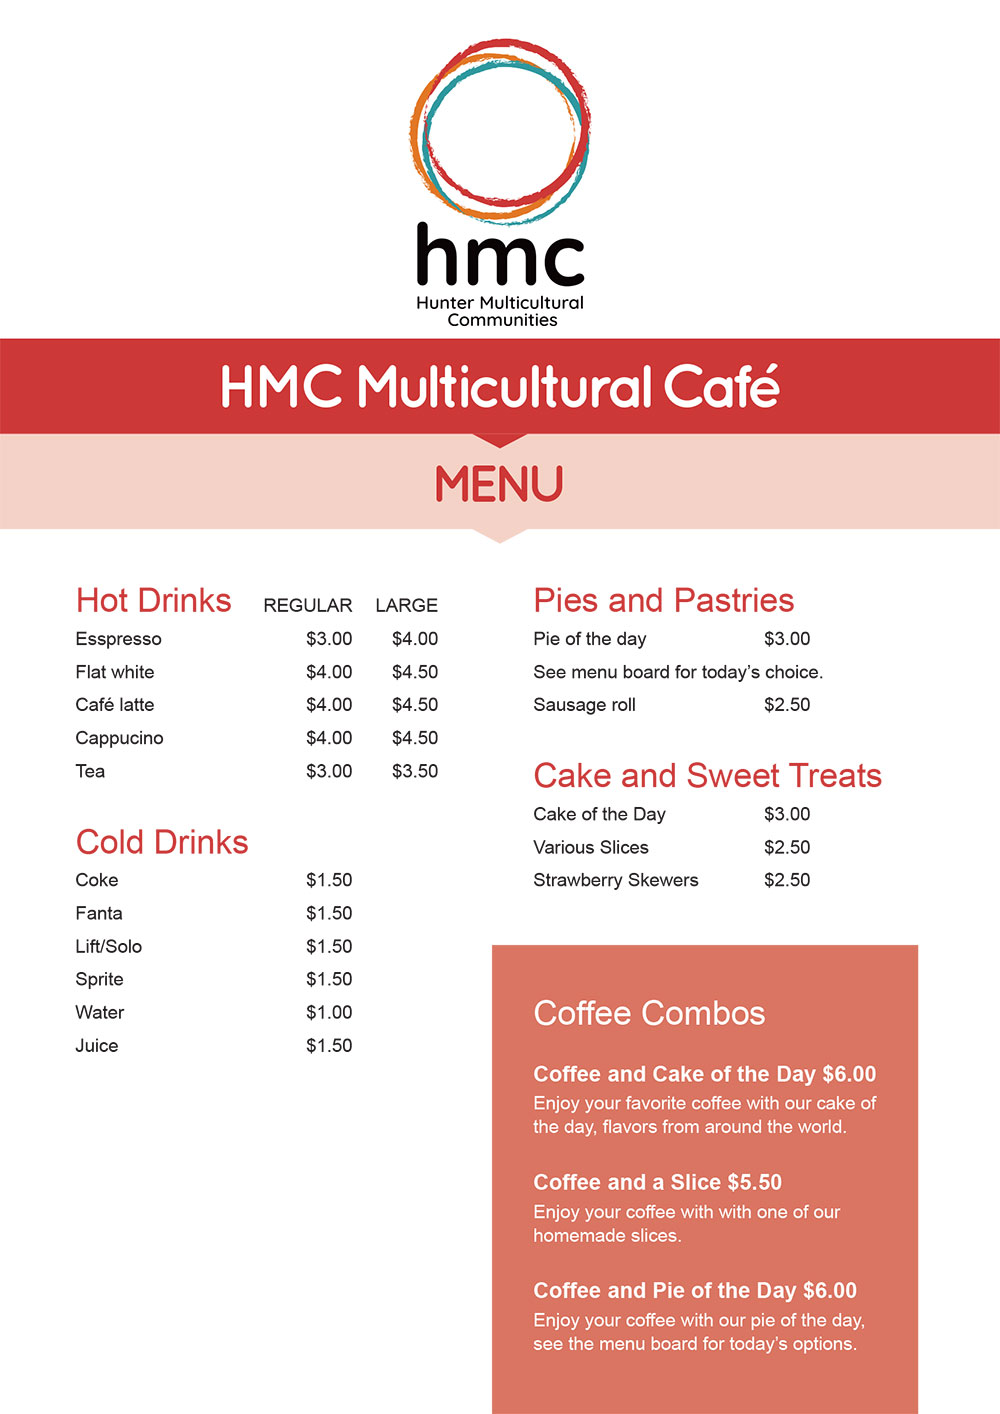 HMC Cafe Menu - CLICK TO VIEW